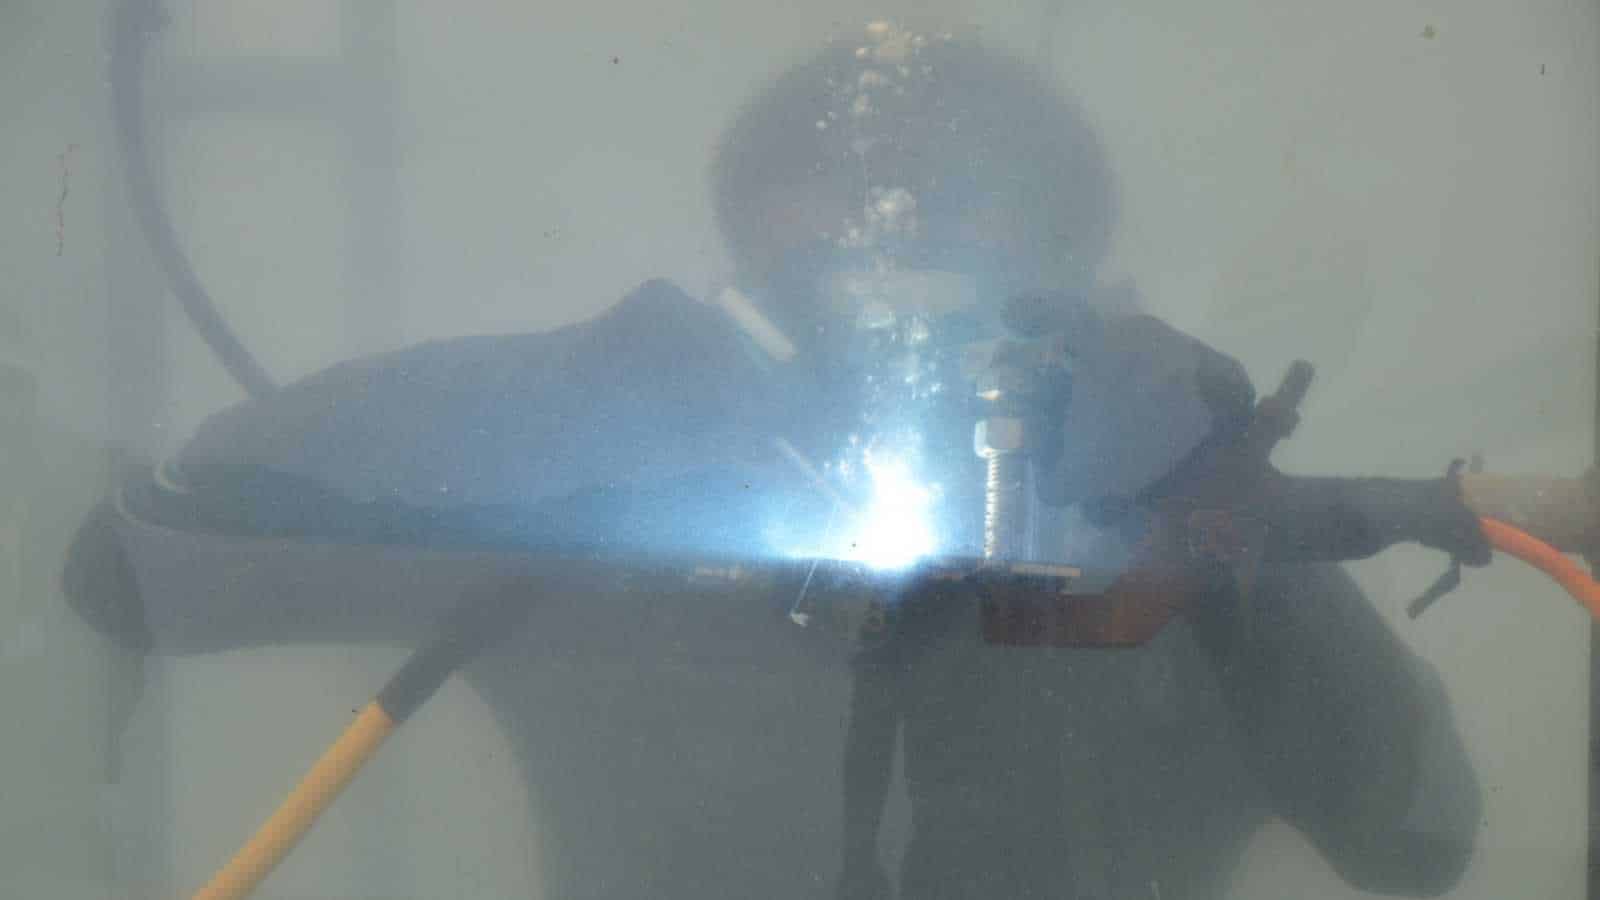 Underwater welding.